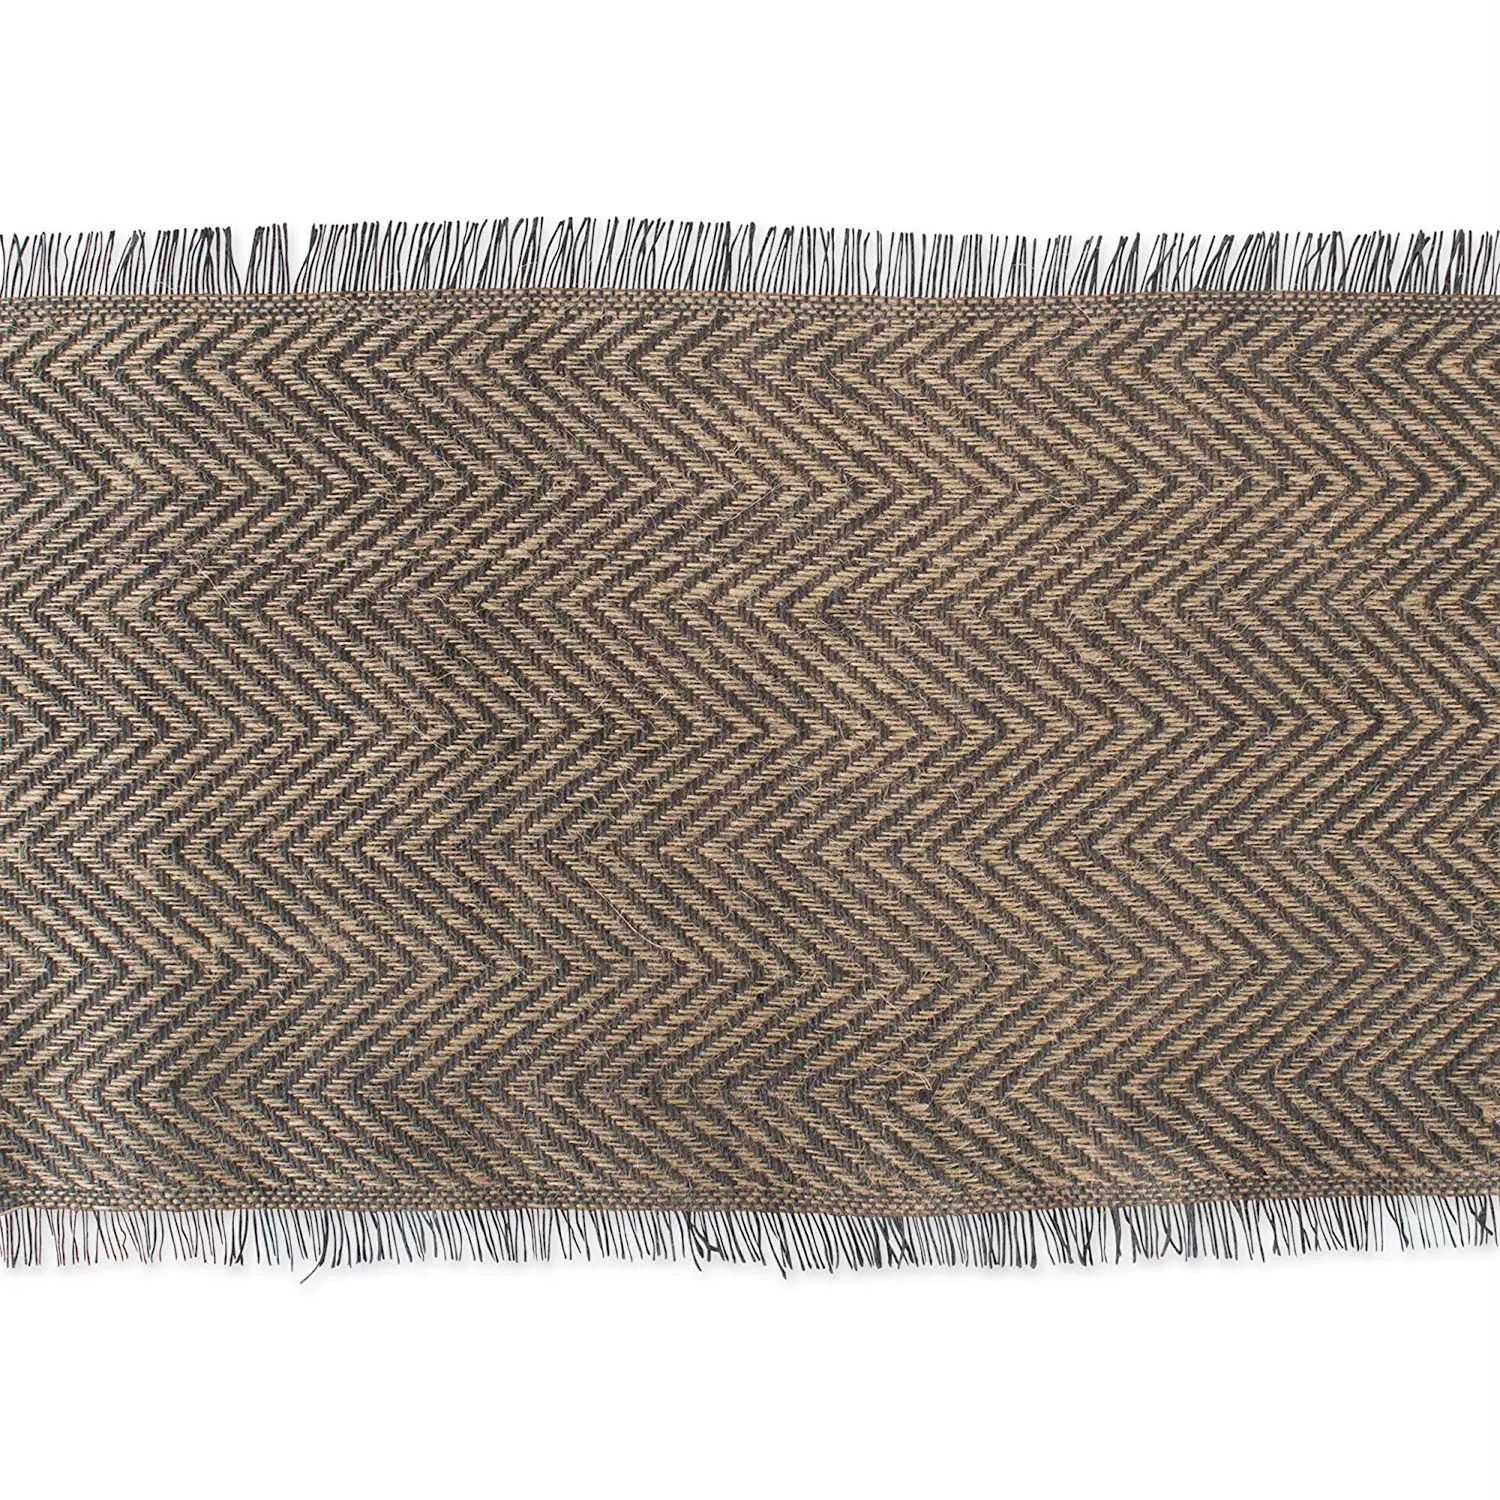 72-дюймовая прямоугольная дорожка для стола серо-коричневого цвета с шевронным принтом 72 дюймовая прямоугольная скатерть с шевронным плетением цвета морской волны и белого цвета